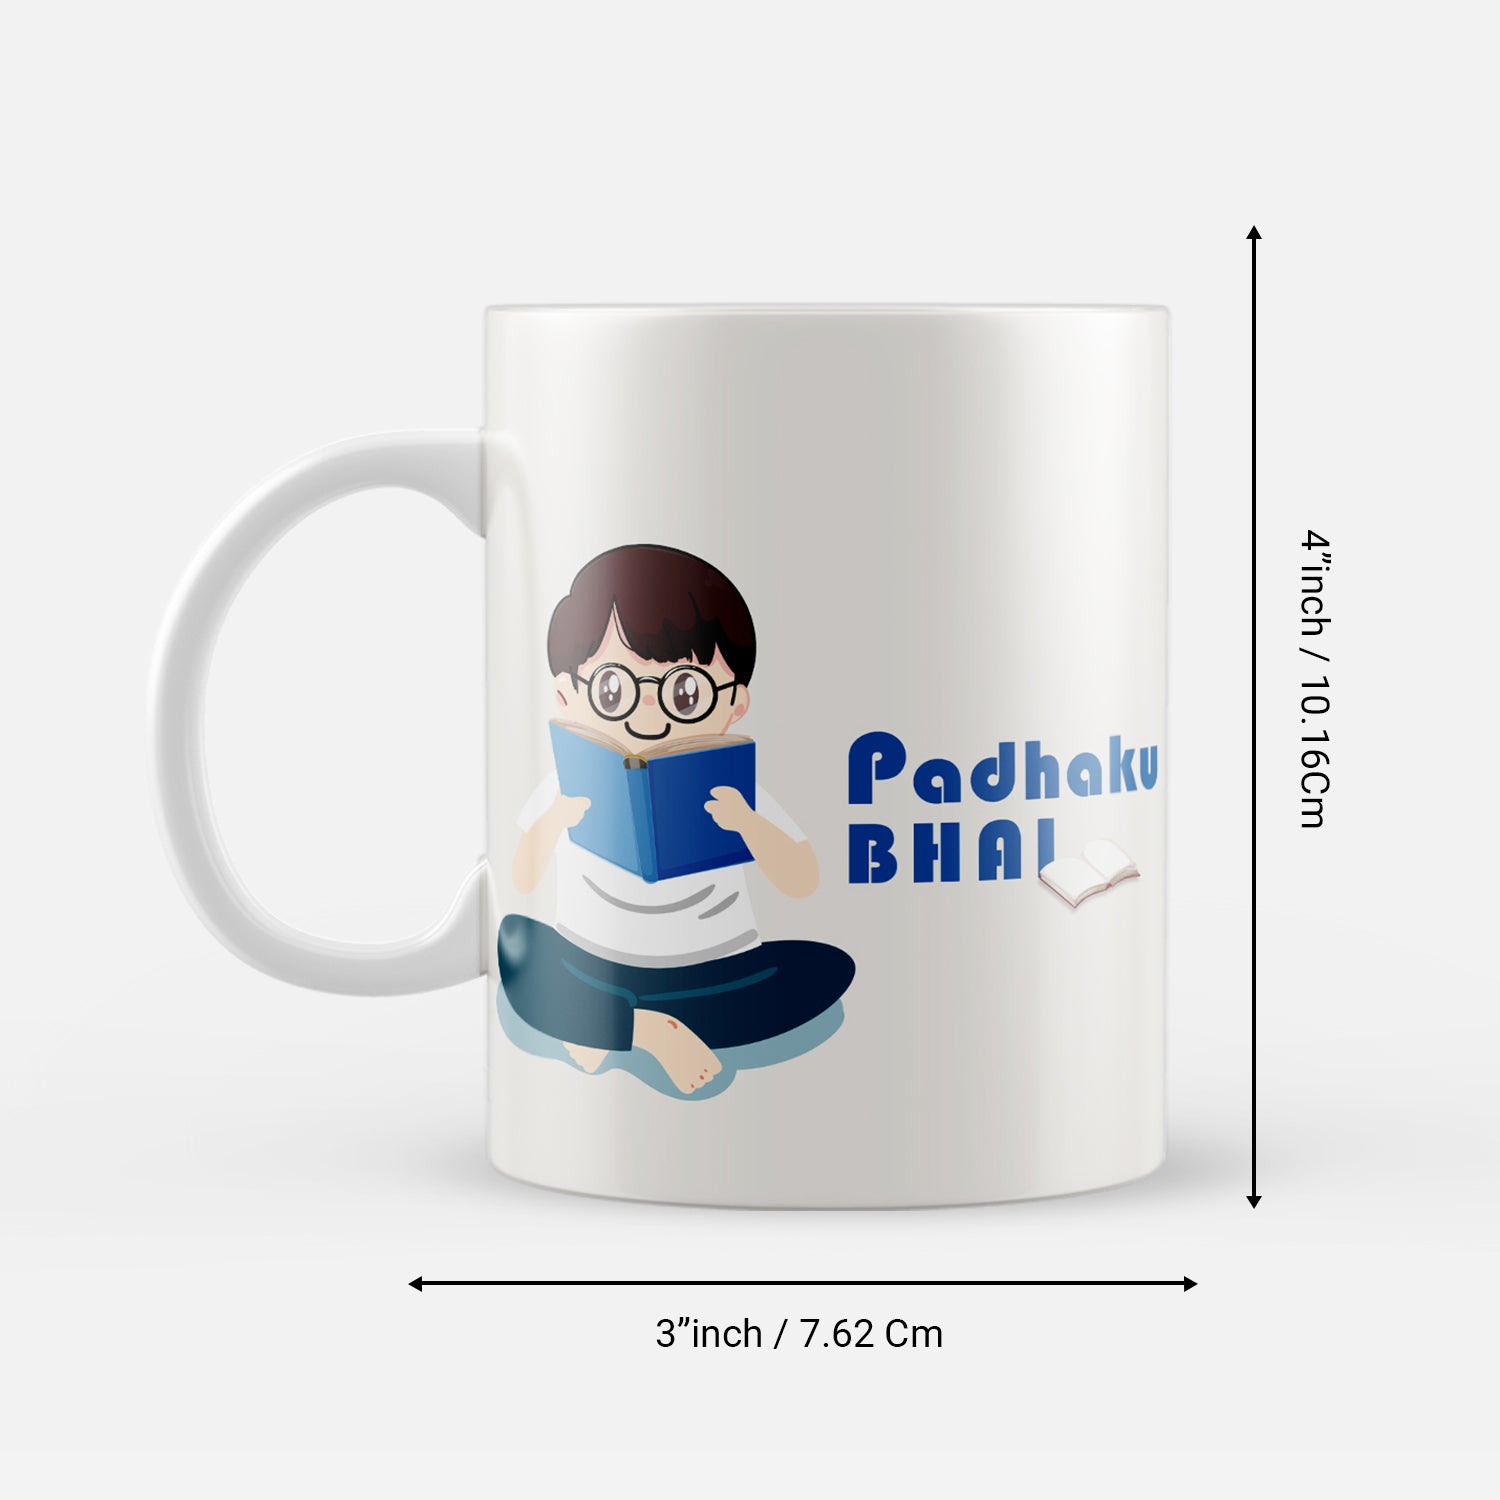 "Padhaku Bhai" Brother Ceramic Coffee/Tea Mug 3